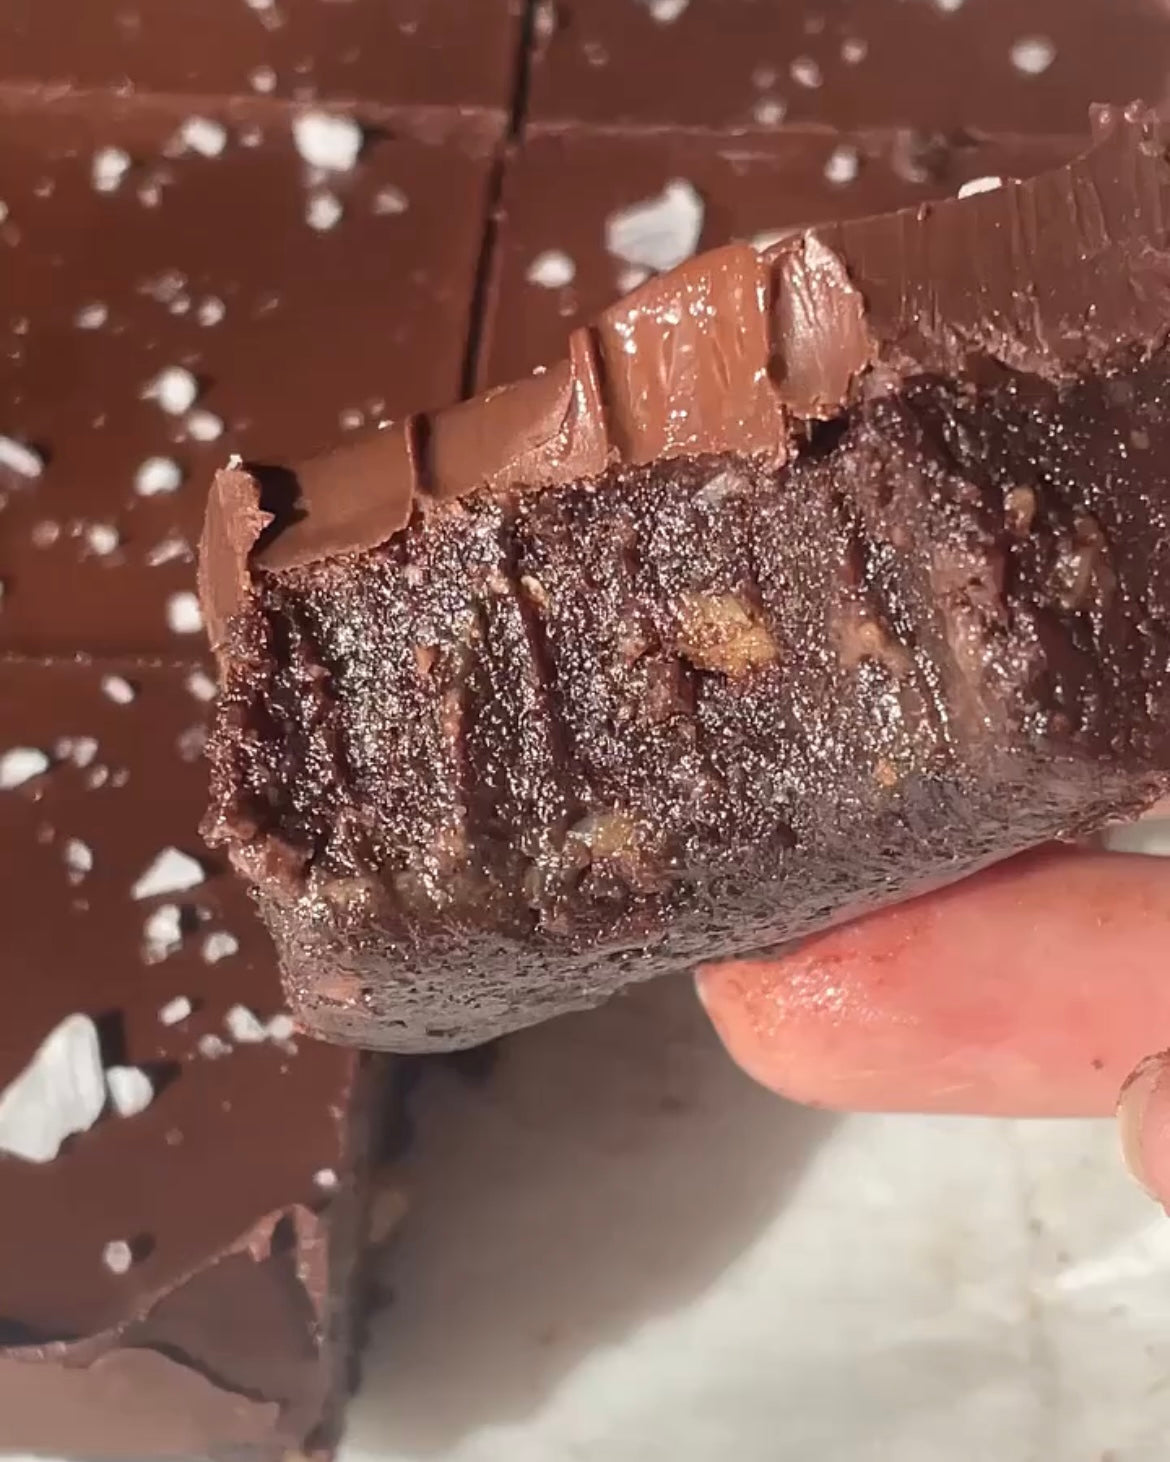 sugen på choklad innan och under mens